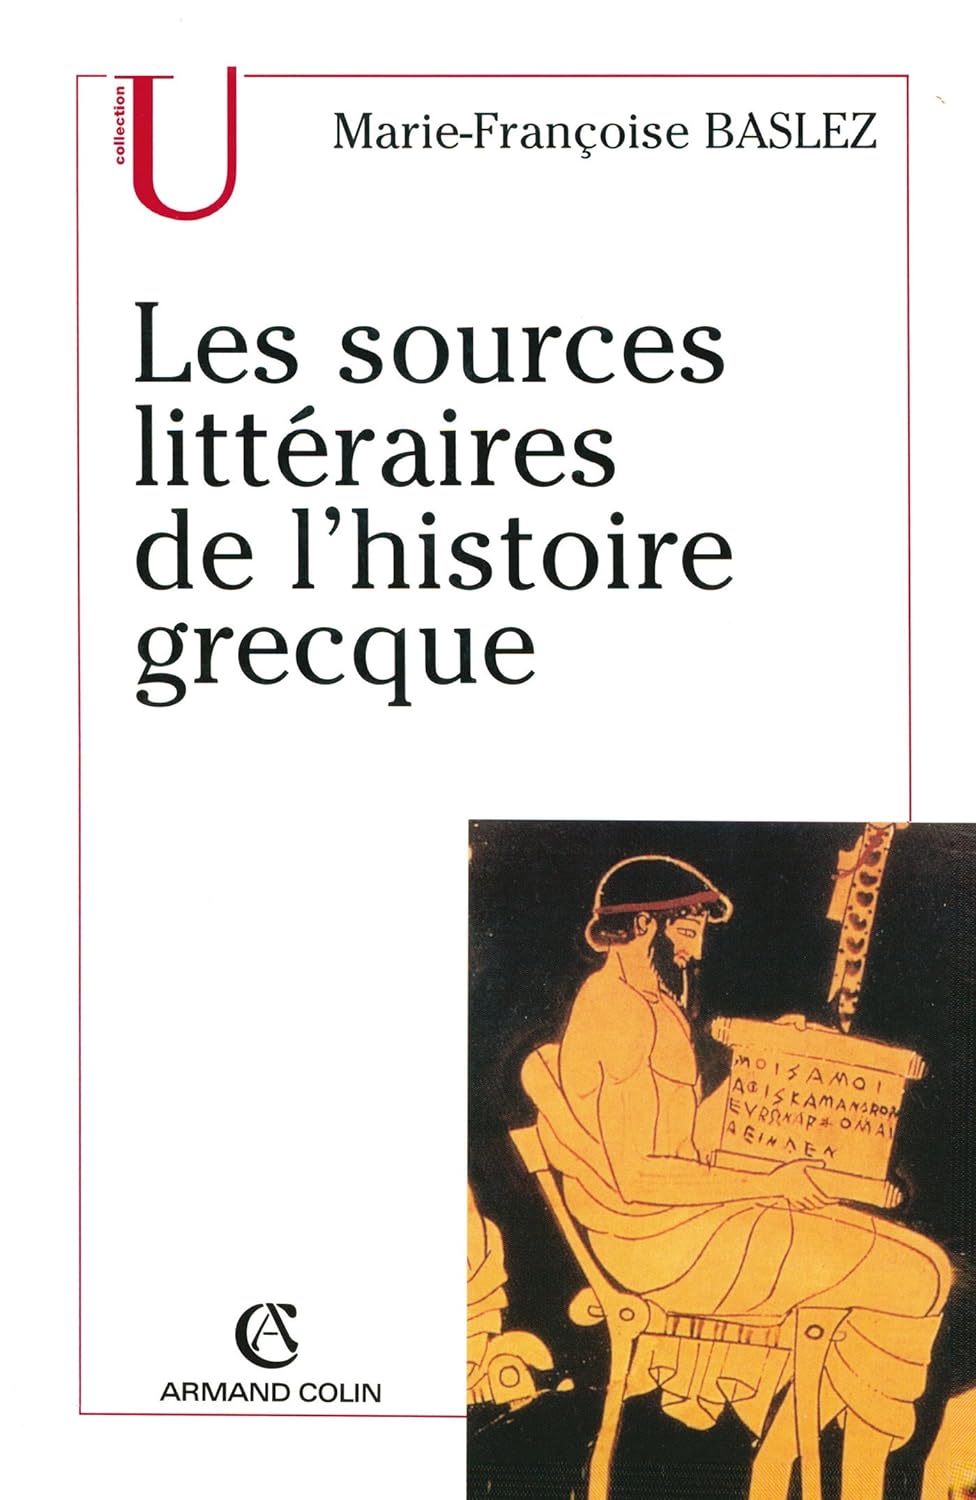 Marie-Françoise Baslez, Les sources littéraires de l'histoire grecque, Armand Colin, 2003